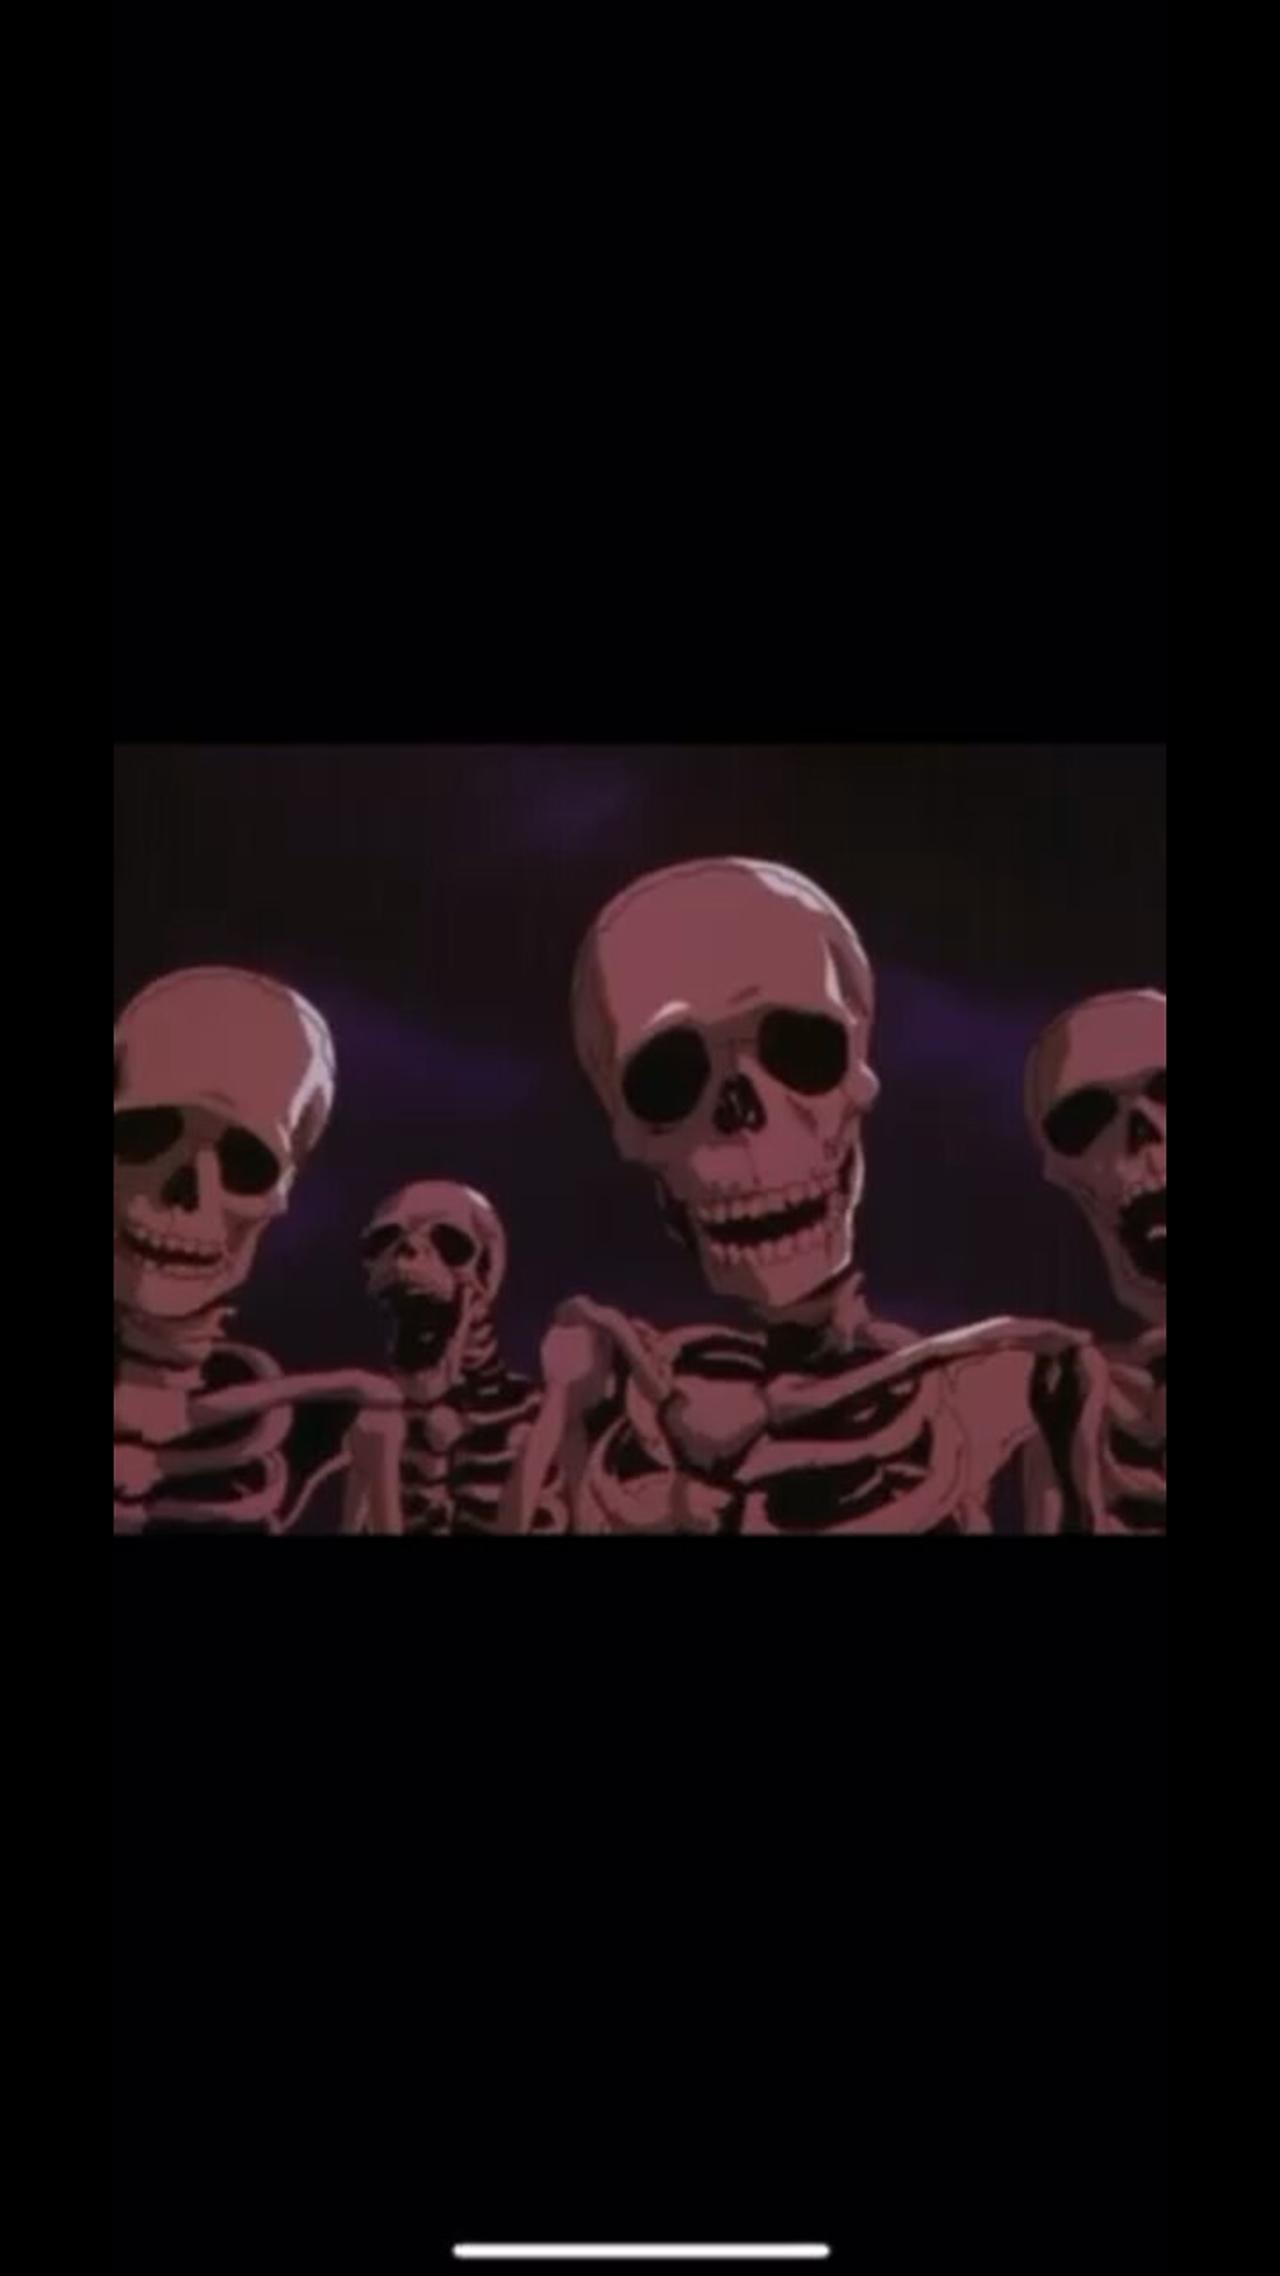 The skeleton meme